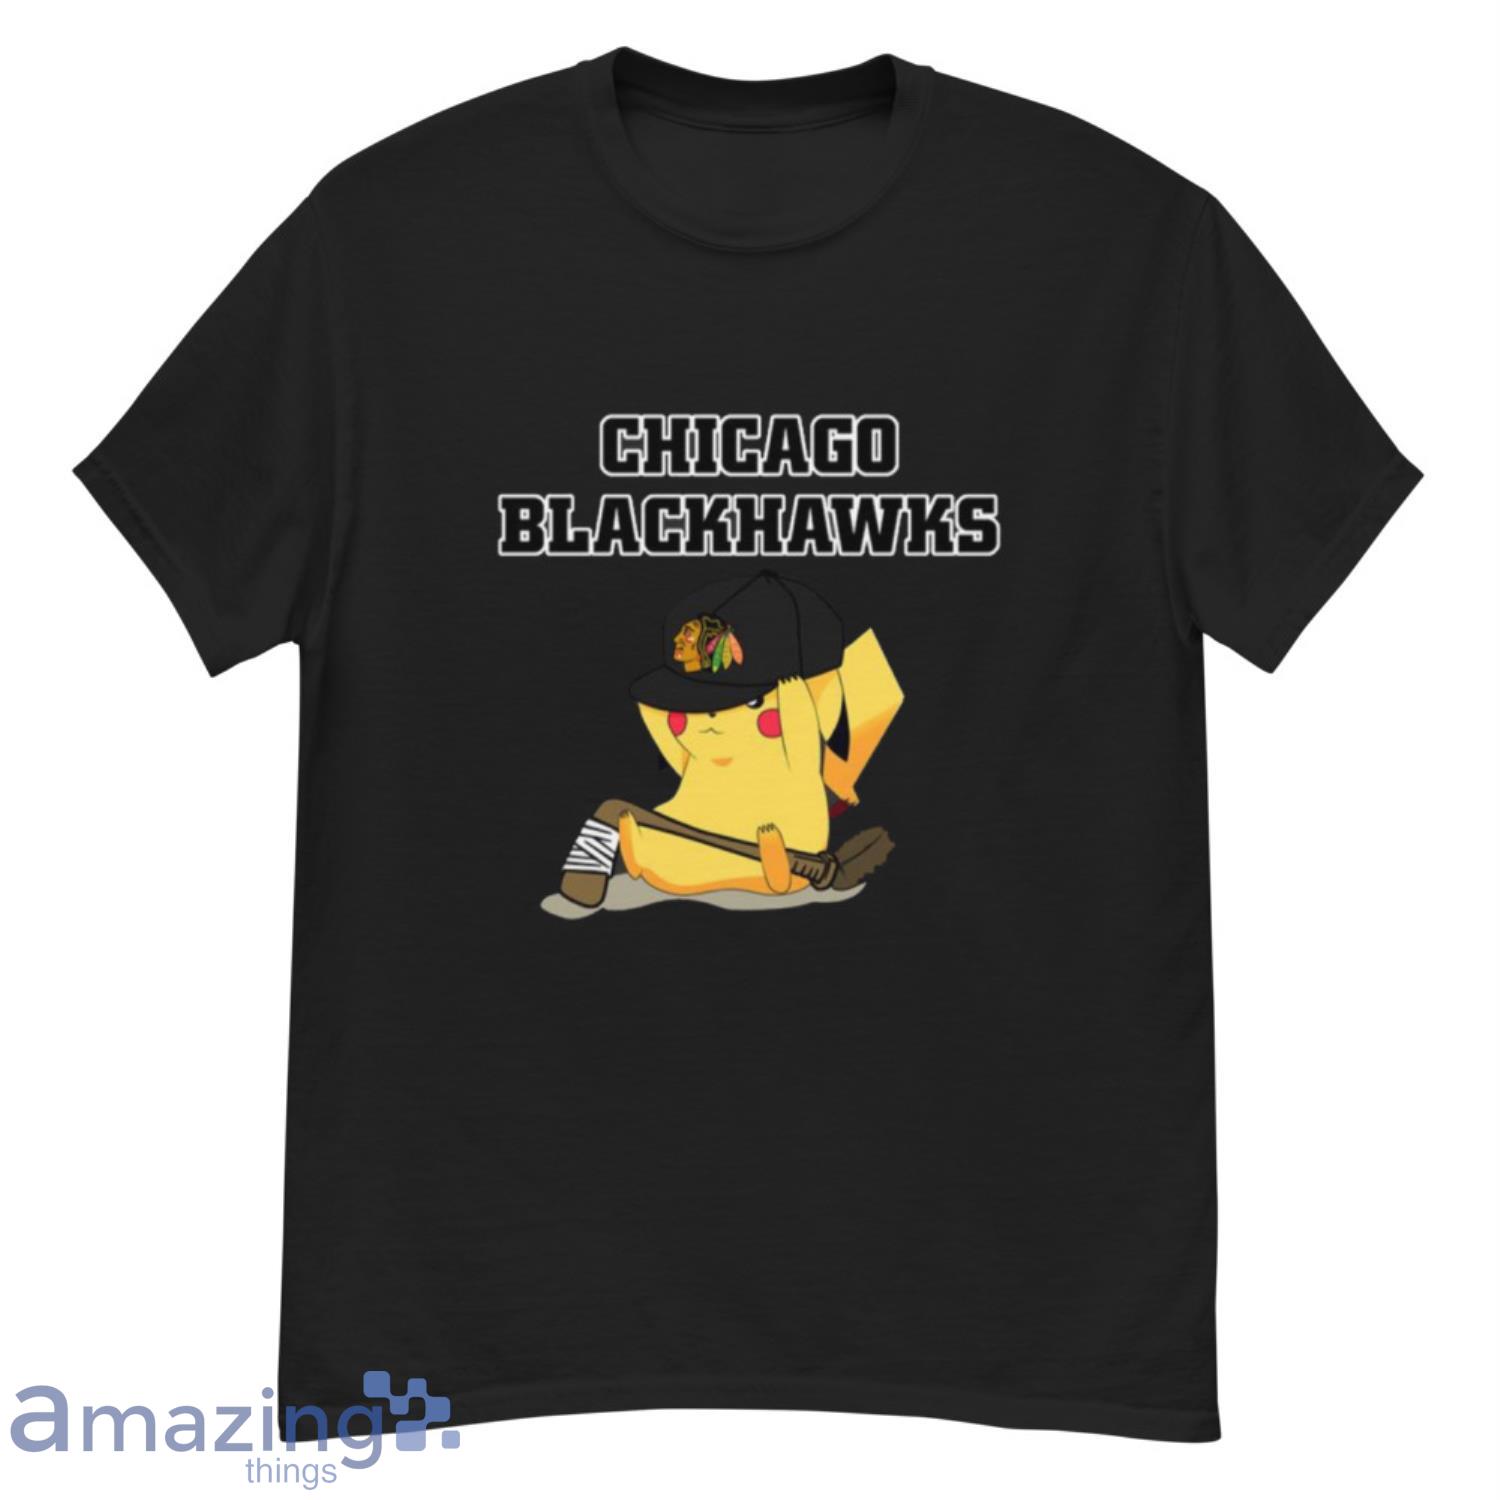 Chicago Blackhawks T-Shirts, Blackhawks Shirts, Blackhawks Tees